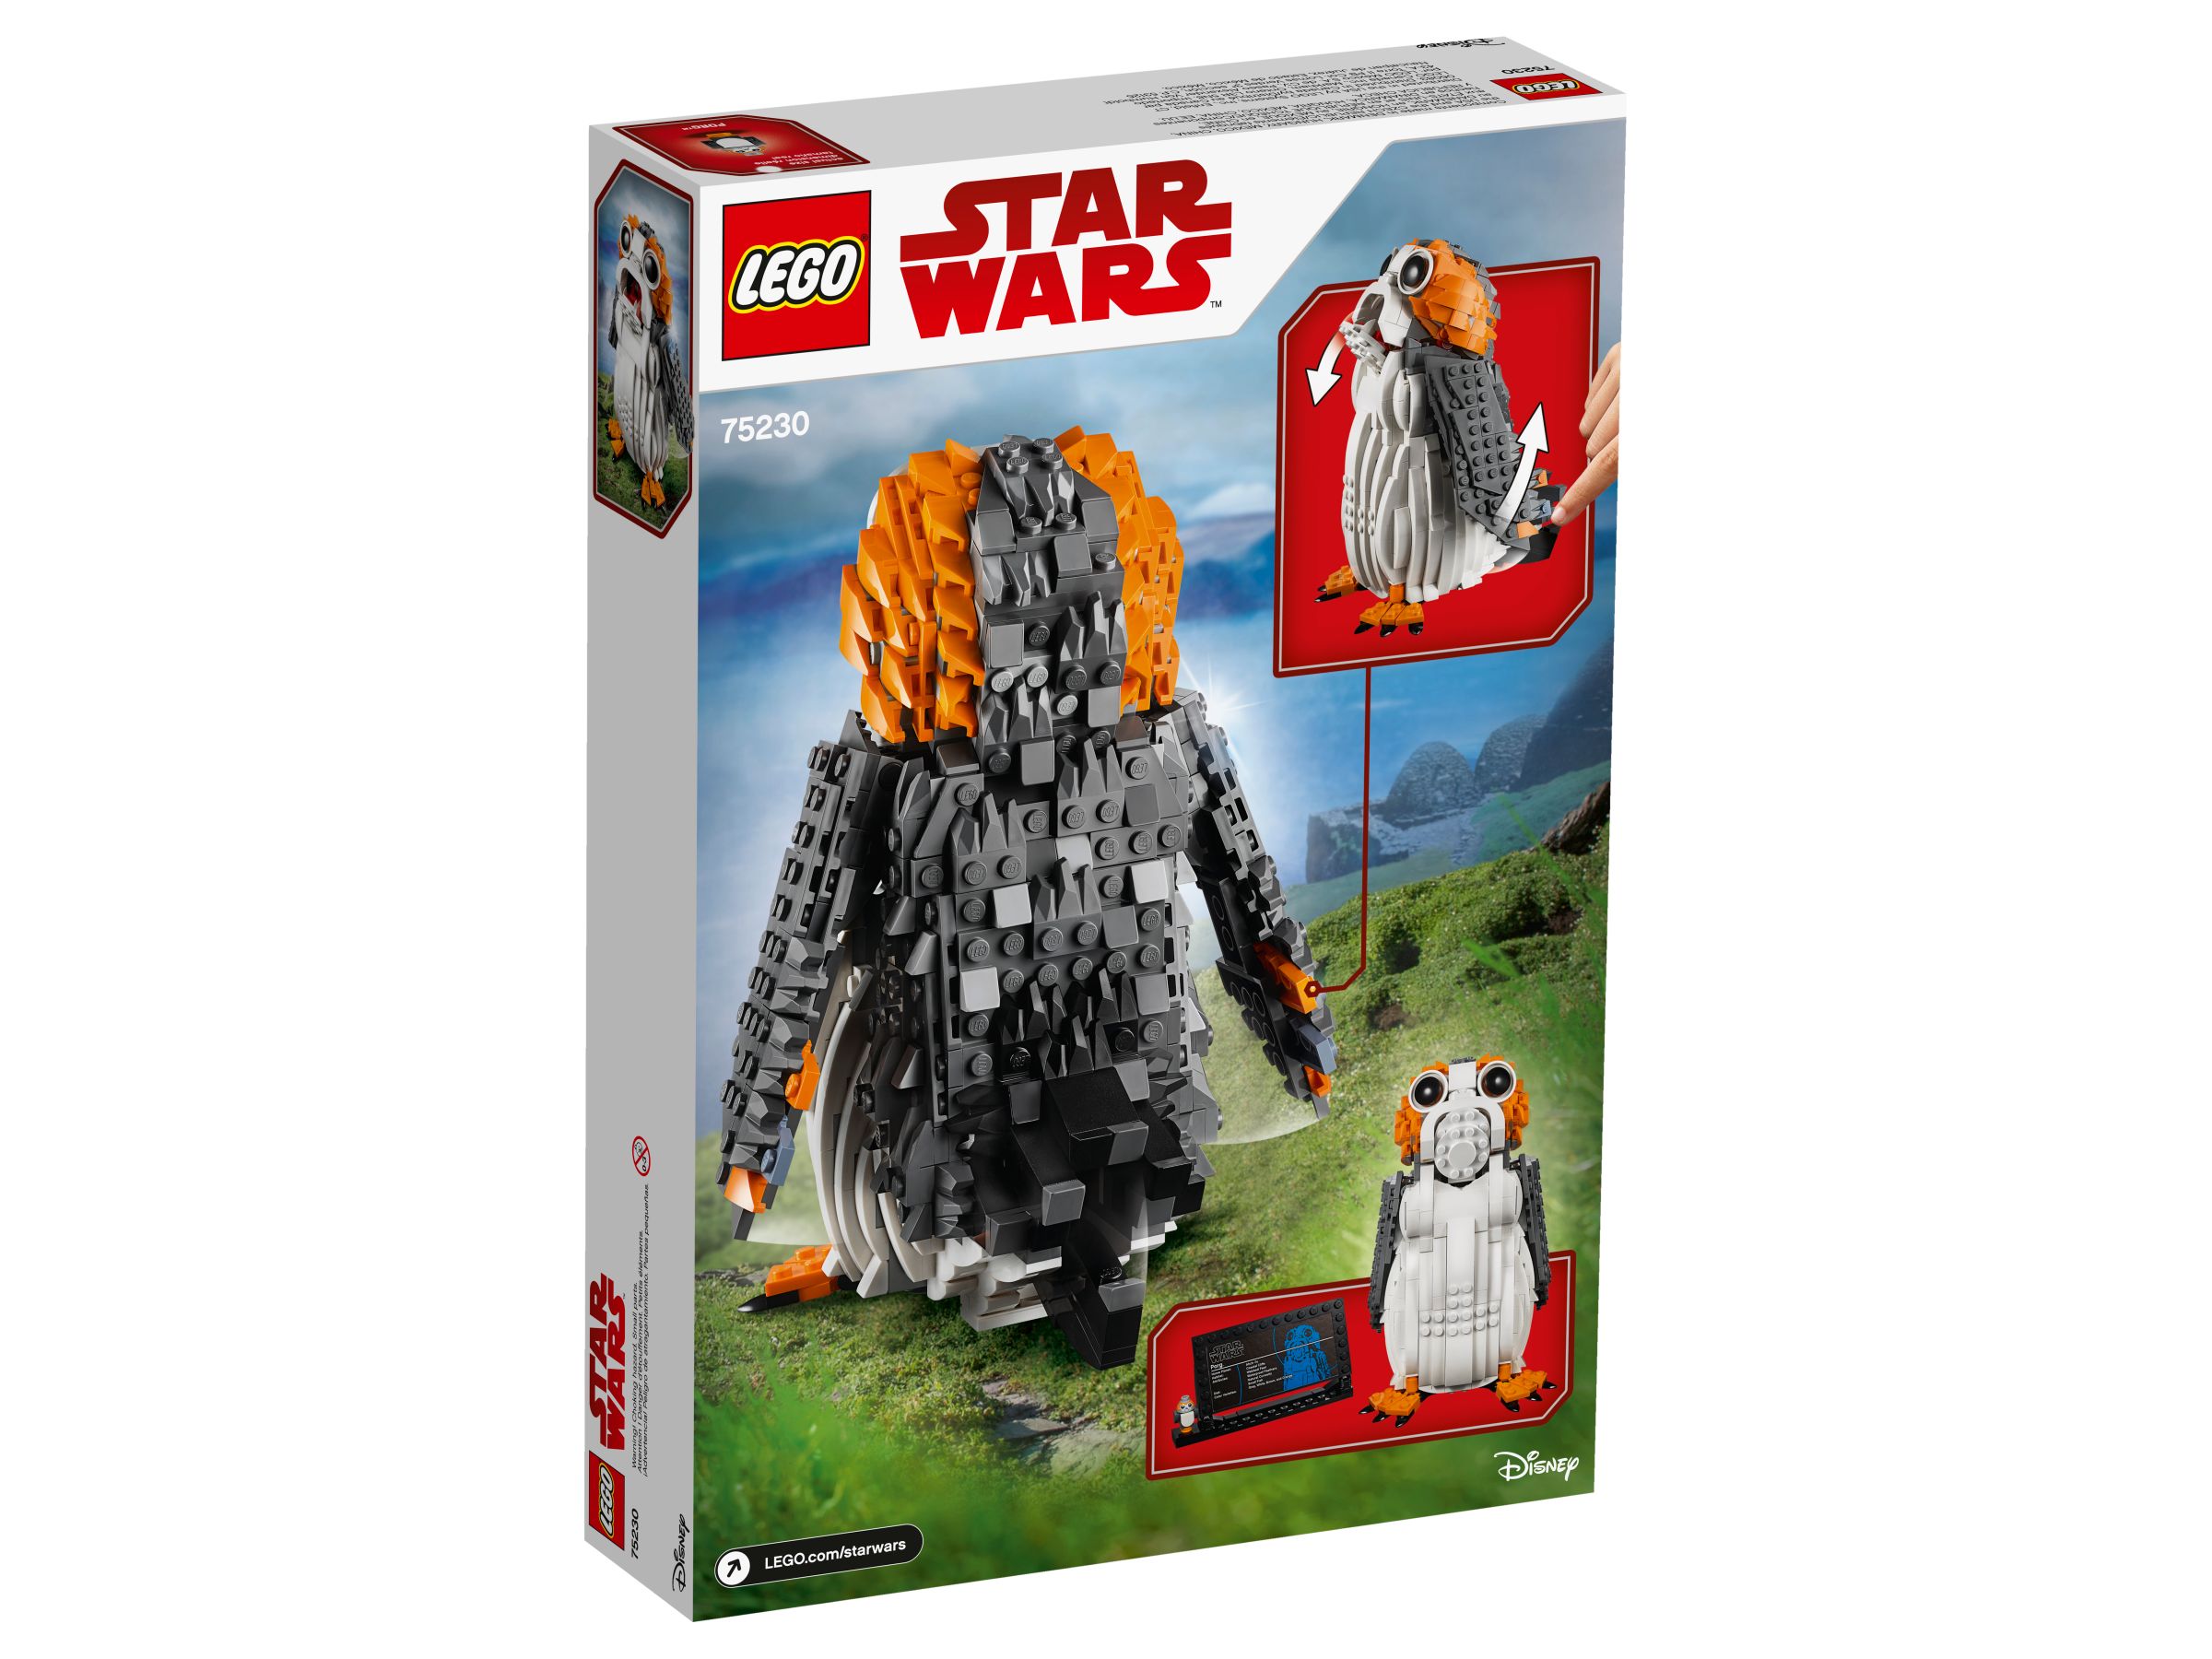 LEGO Star Wars 75230 Porg™ LEGO_75230_alt2.jpg